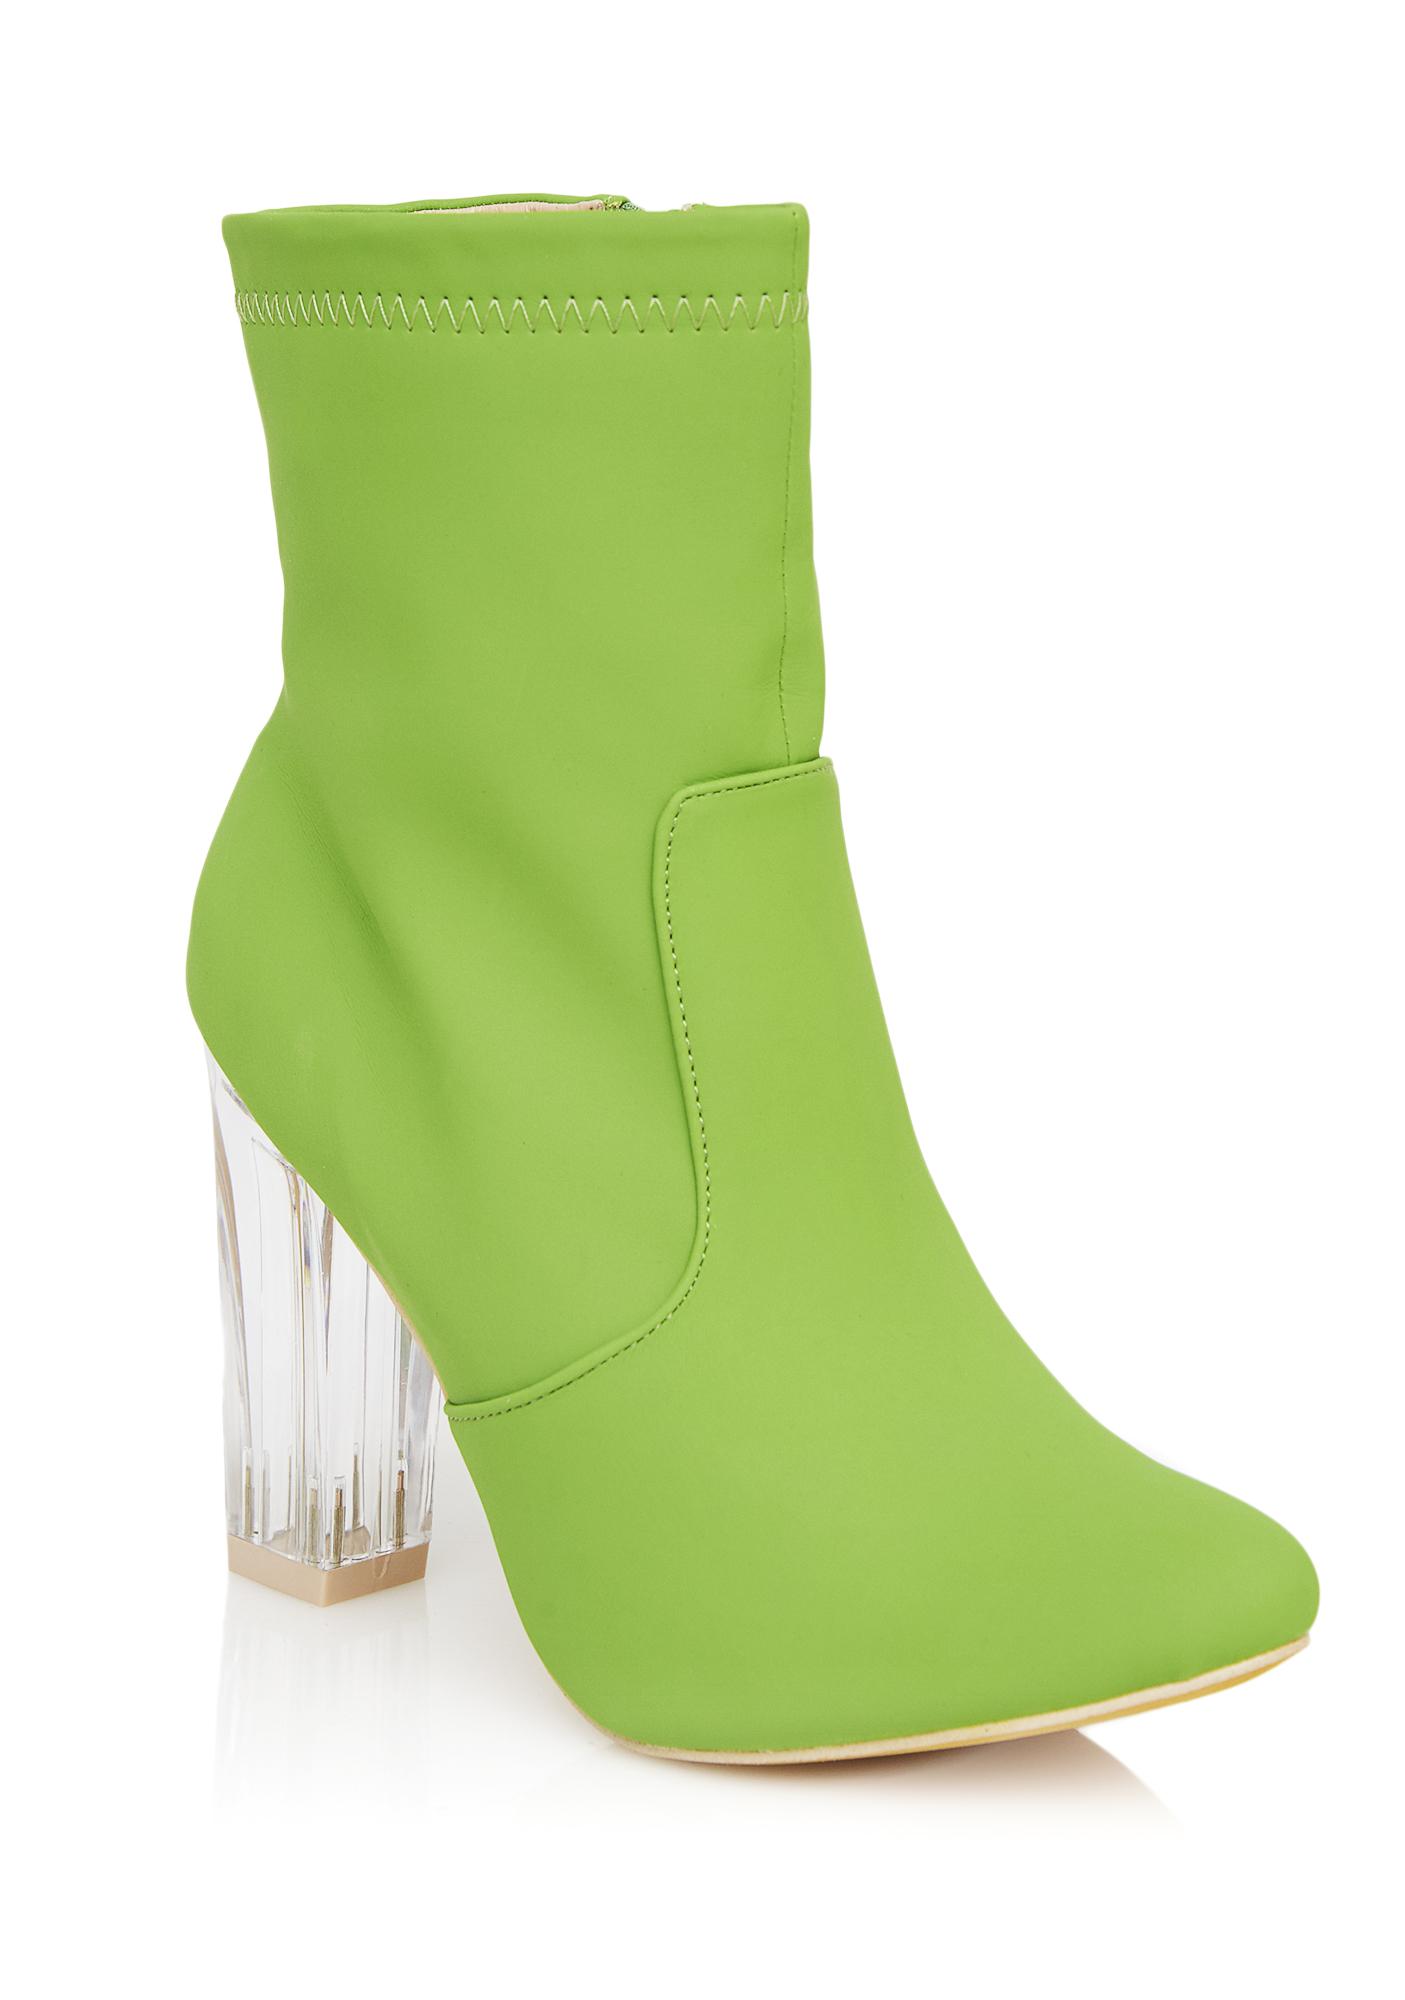 lime green bootie heels